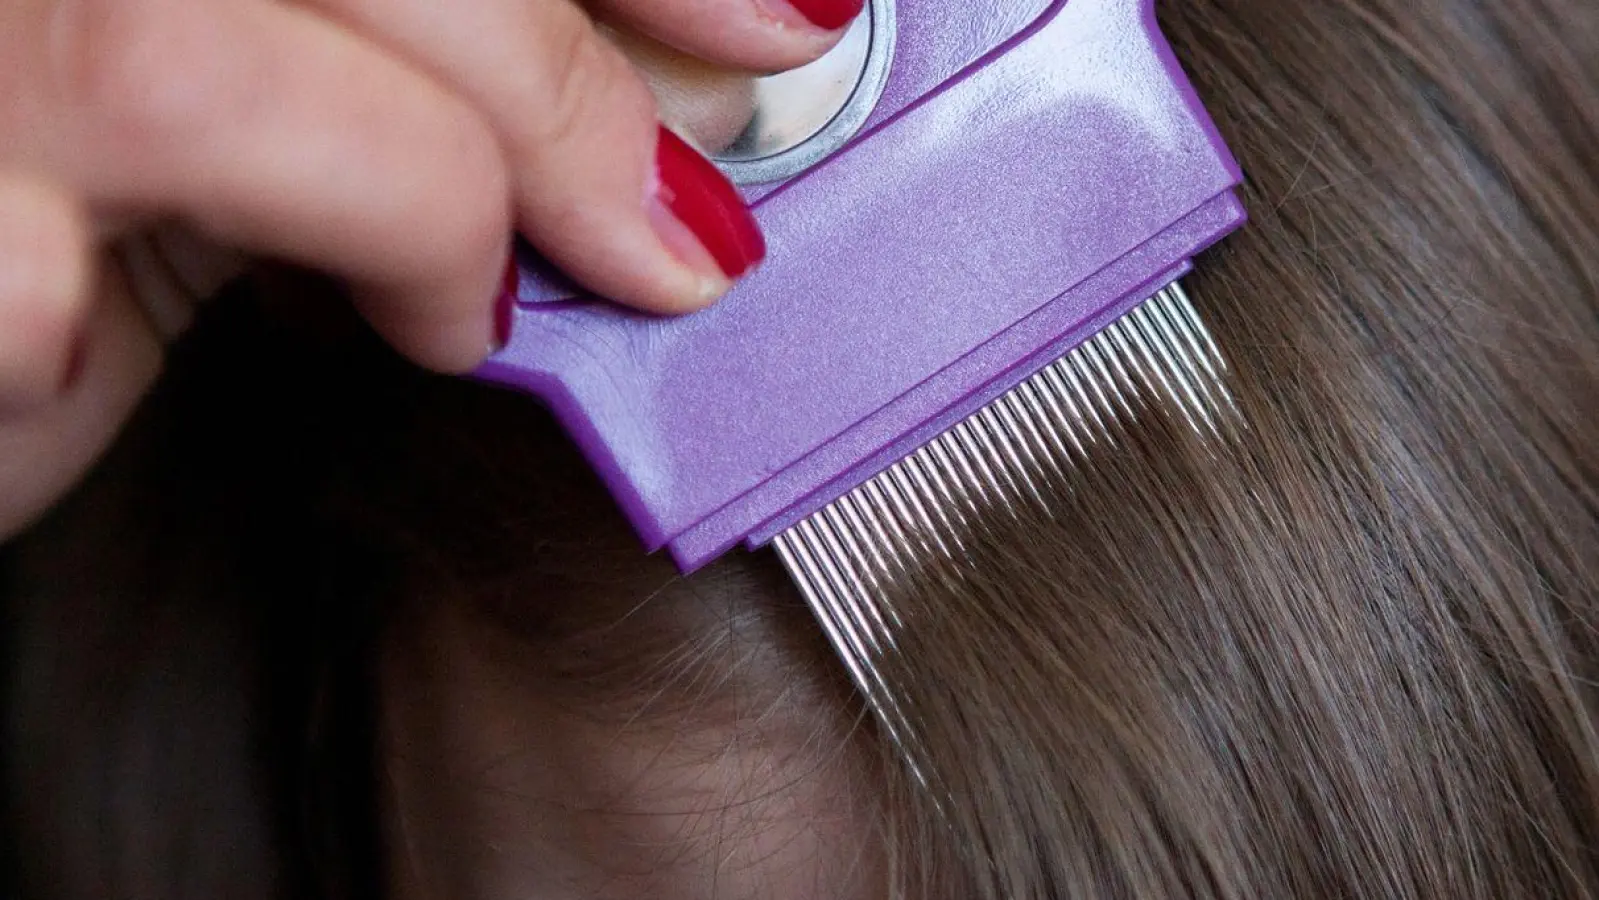 Lästig, aber ungefährlich: Kopfläuse wird man am besten mit Haarpflegespülung und einem Läusekamm los. (Foto: Silvia Marks/dpa-tmn)